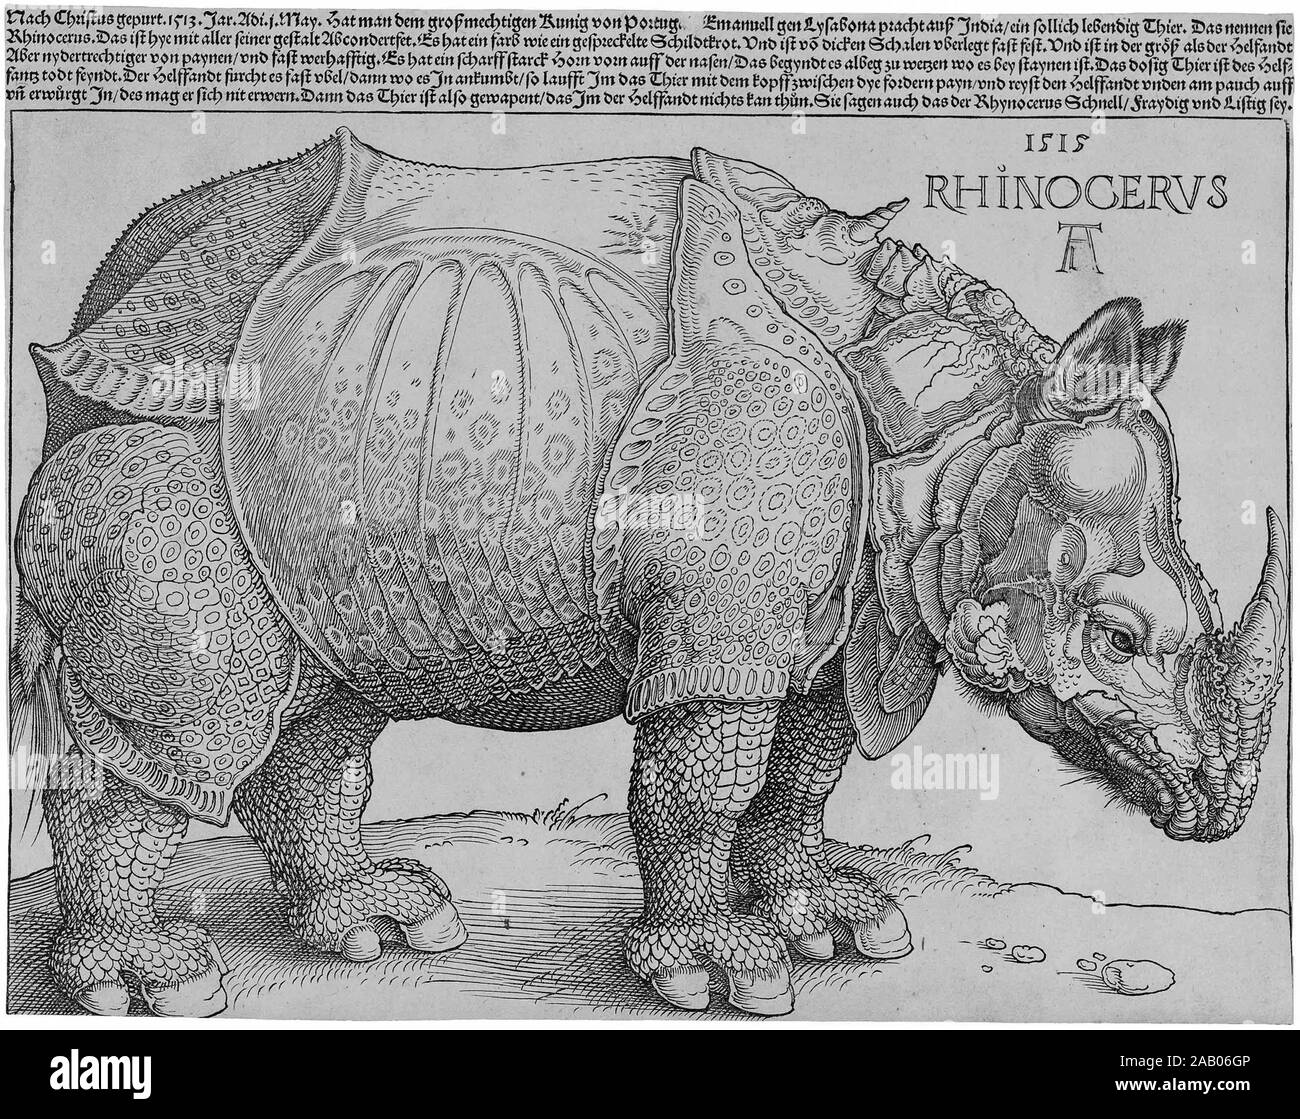 Rinoceronte de Durero, de Alberto Durero (1515), el rinoceronte de Durero  es el nombre común dado a una xilografía ejecutados por el pintor y  grabador alemán Alberto Durero en 1515 Fotografía de